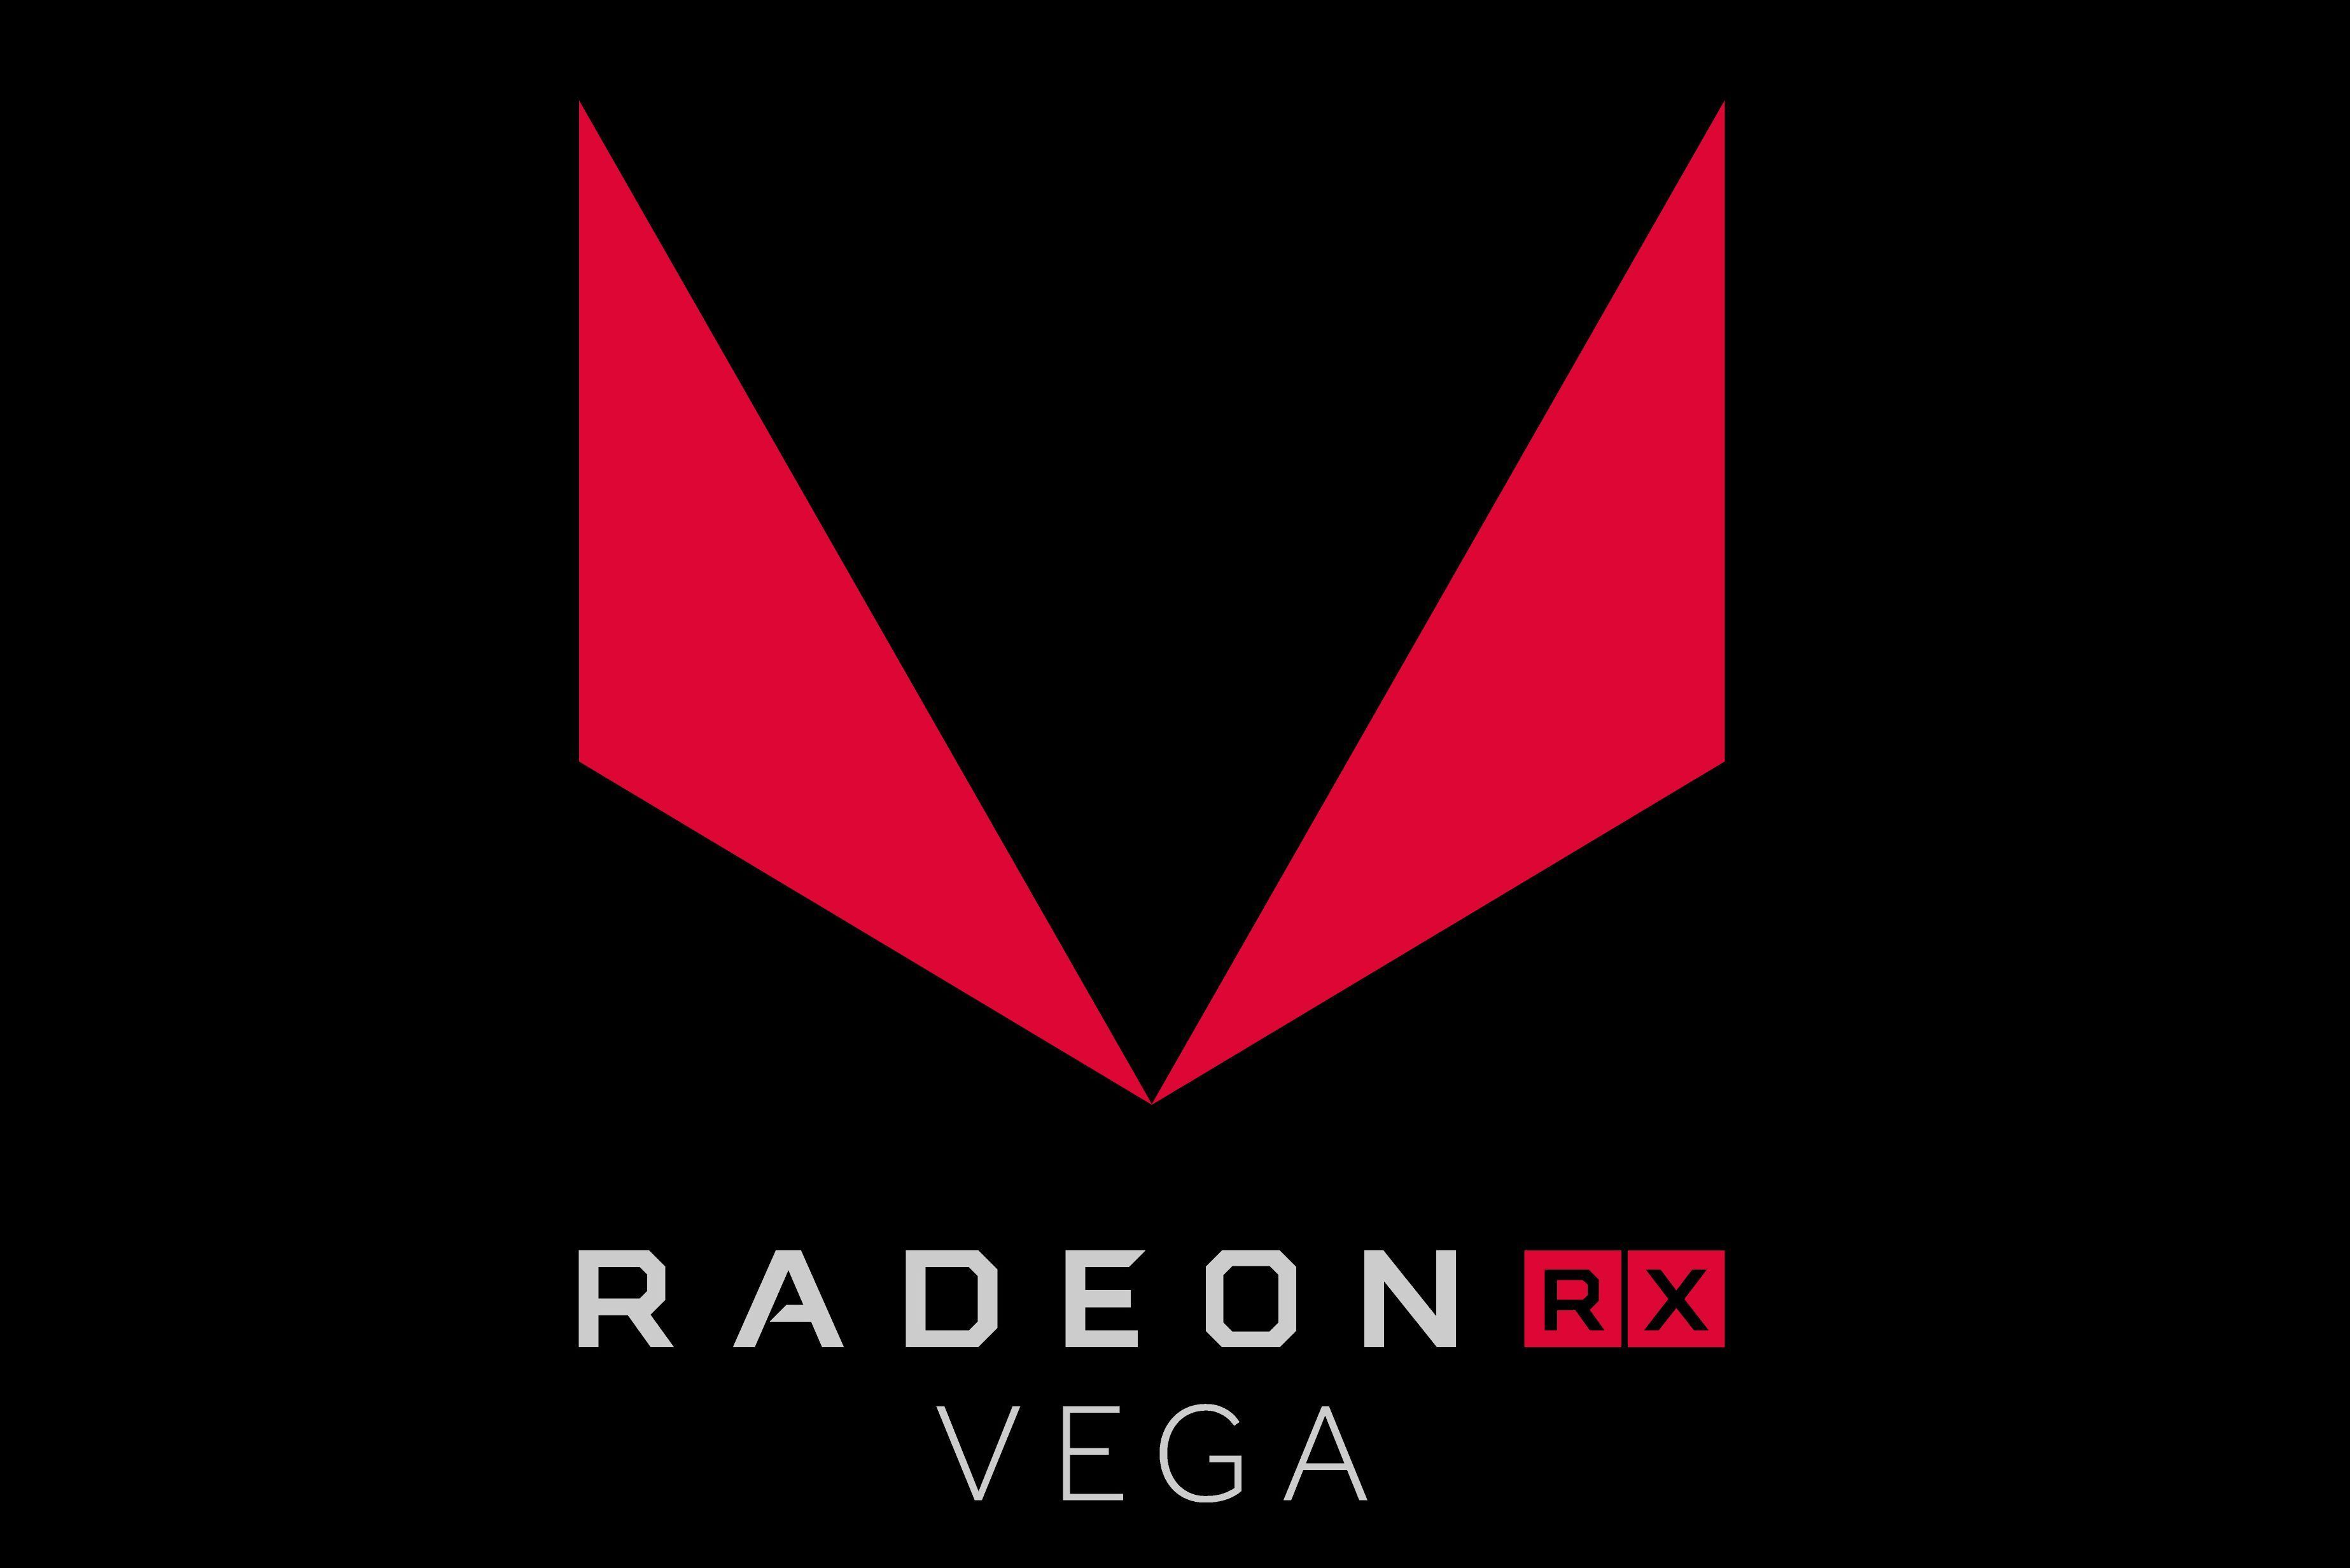 Immagine pubblicata in relazione al seguente contenuto: Le GPU AMD Radeon RX Vega supportano le API DirectX 12 level 12.1 | Nome immagine: news26655_Radeon-RX-Vega_1.jpg